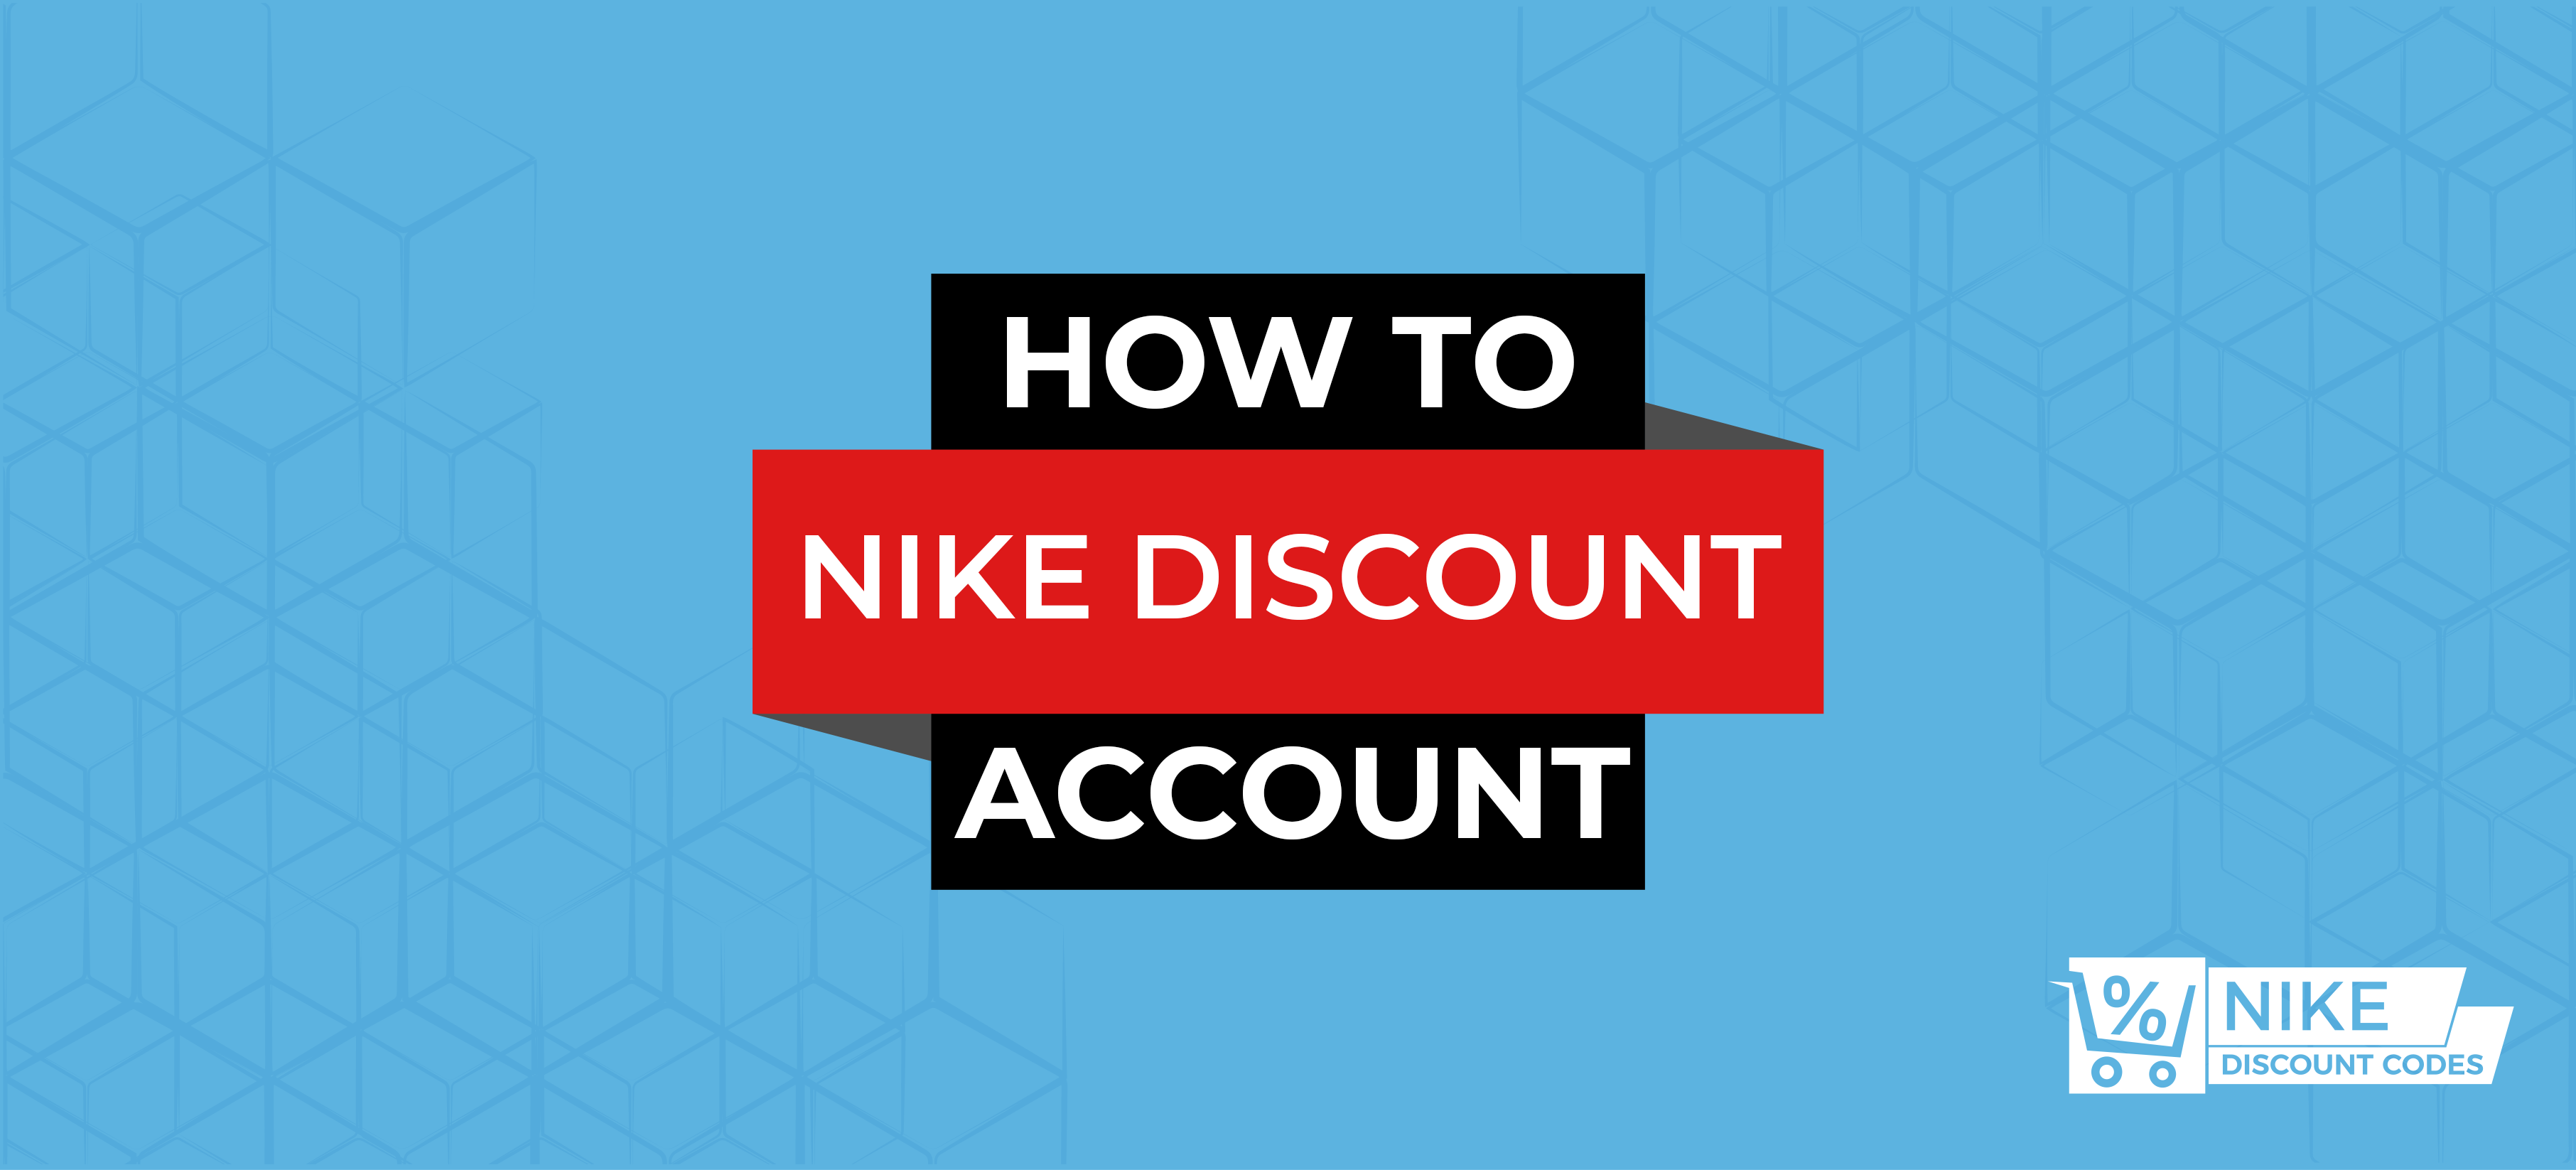 buy nike accounts